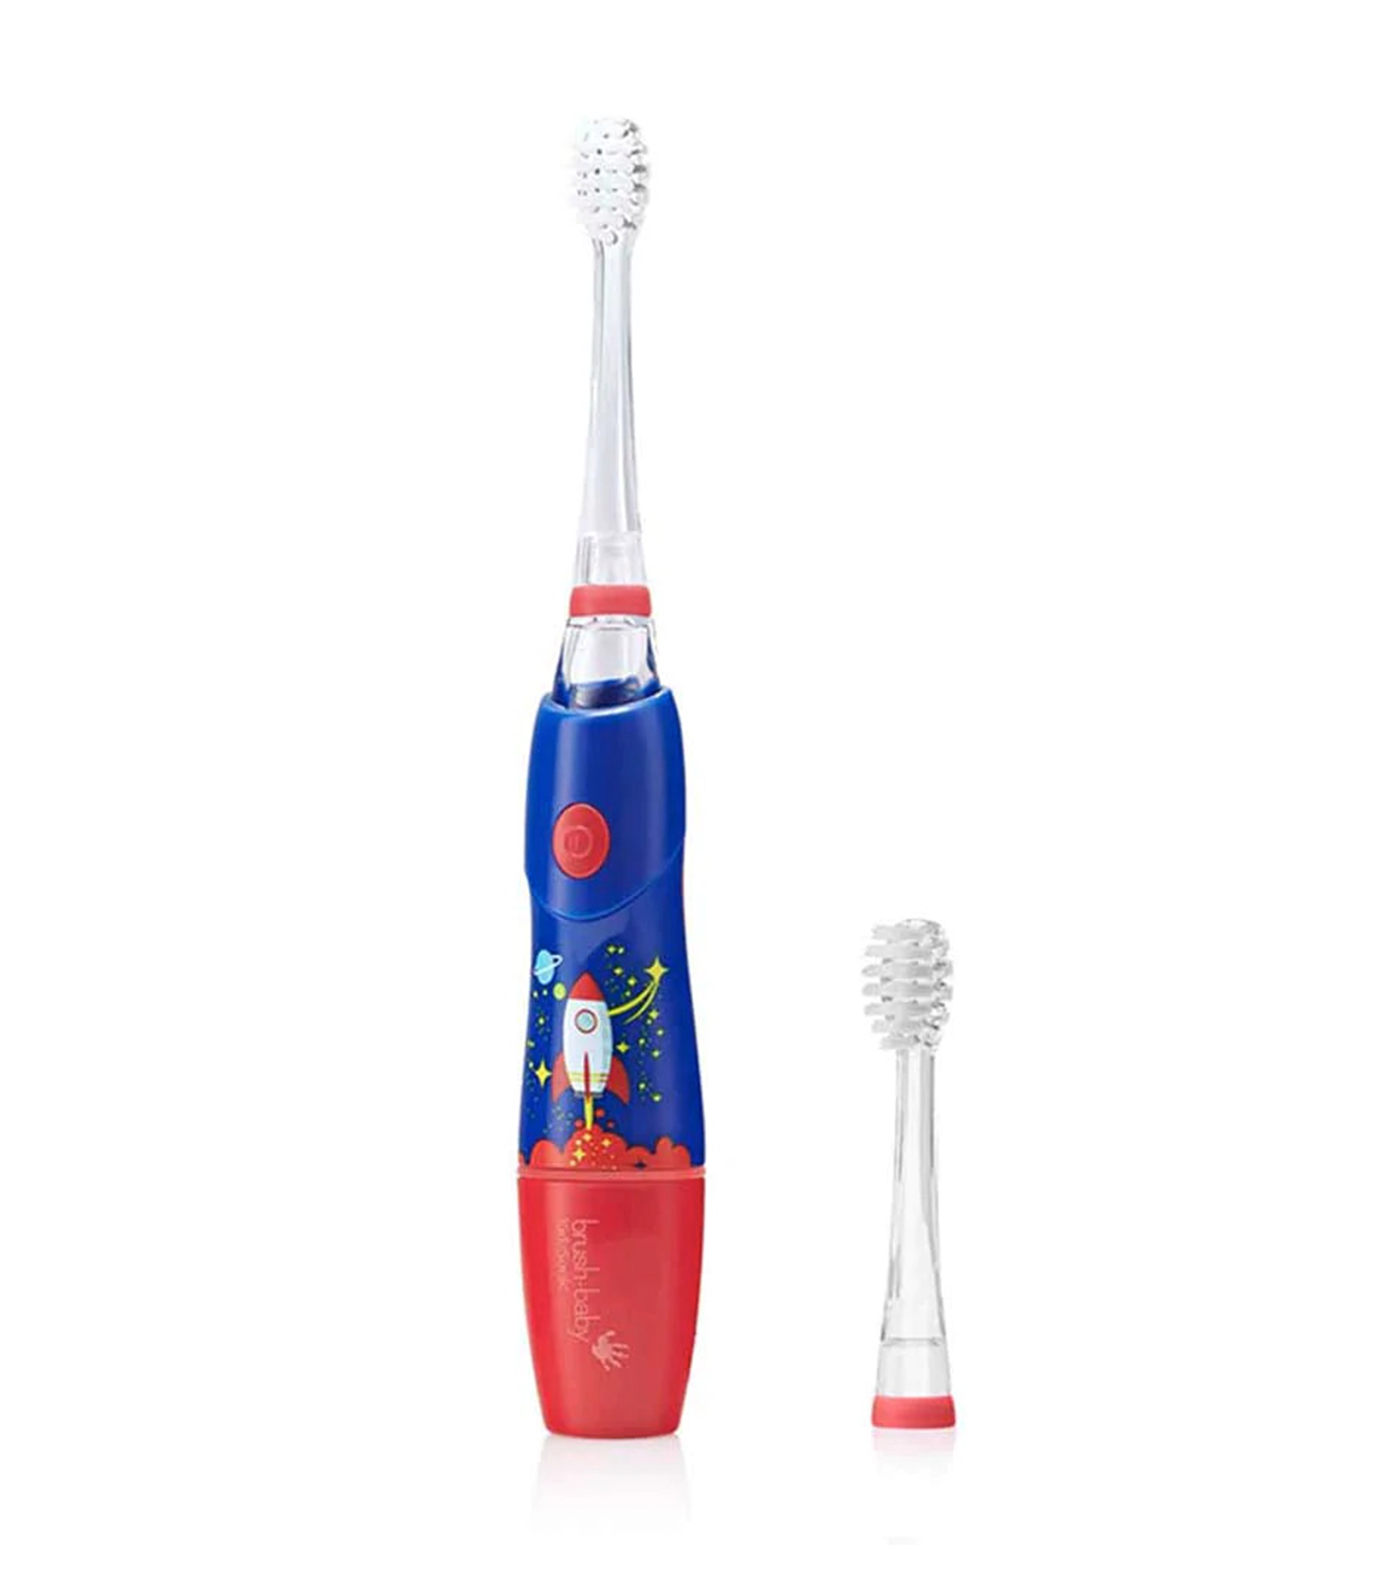 KidzSonic Kids Electric Toothbrush - Rocket